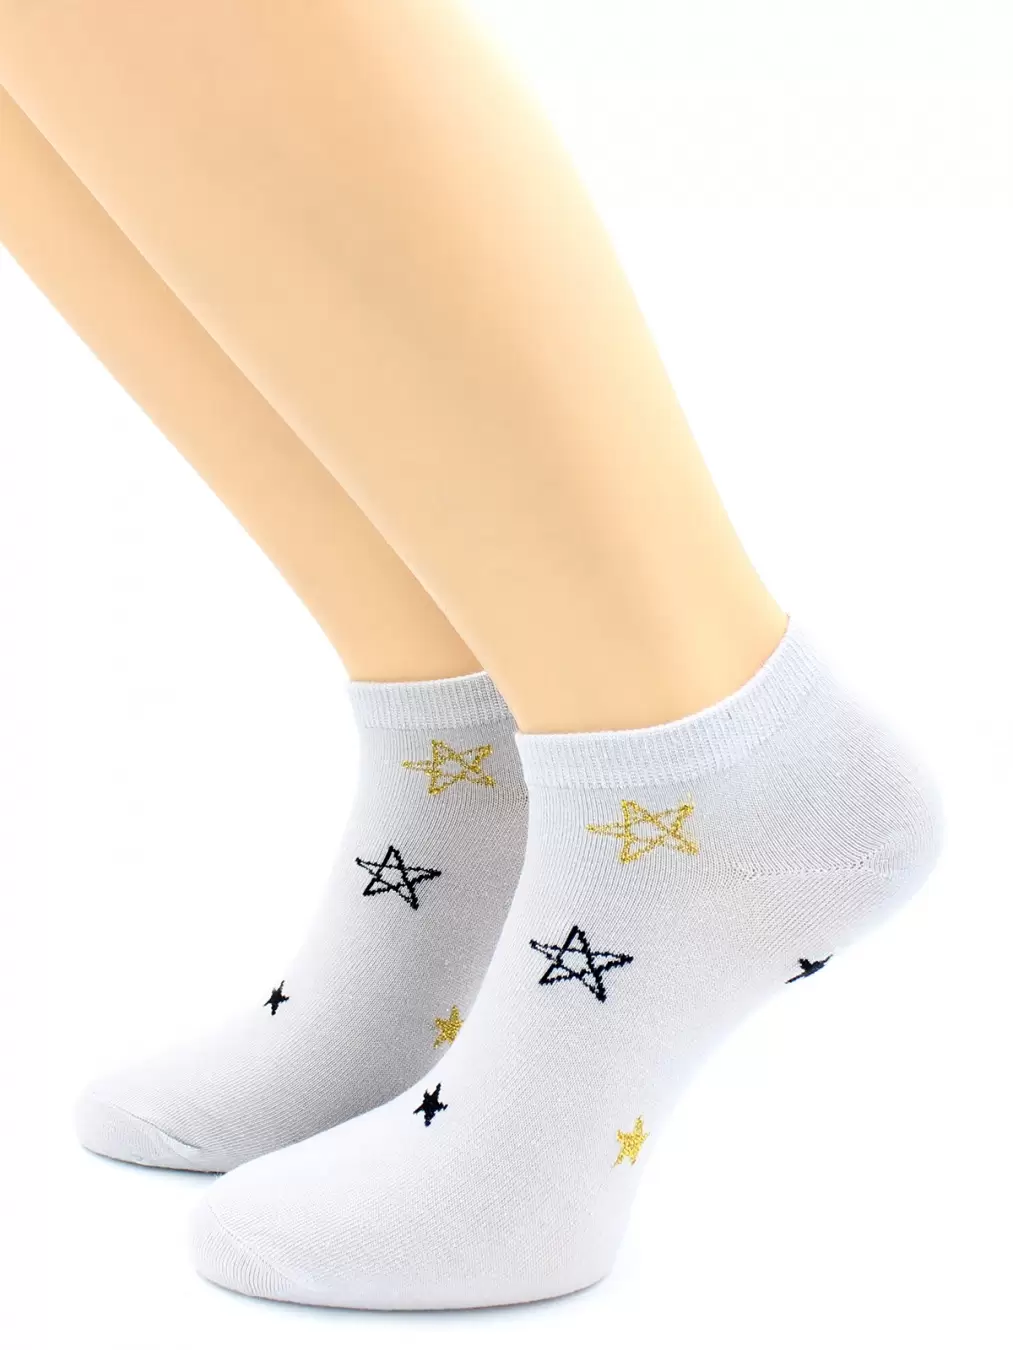 Hobby Line 2120-01, носки женские Звезды с люрексом (изображение 1)